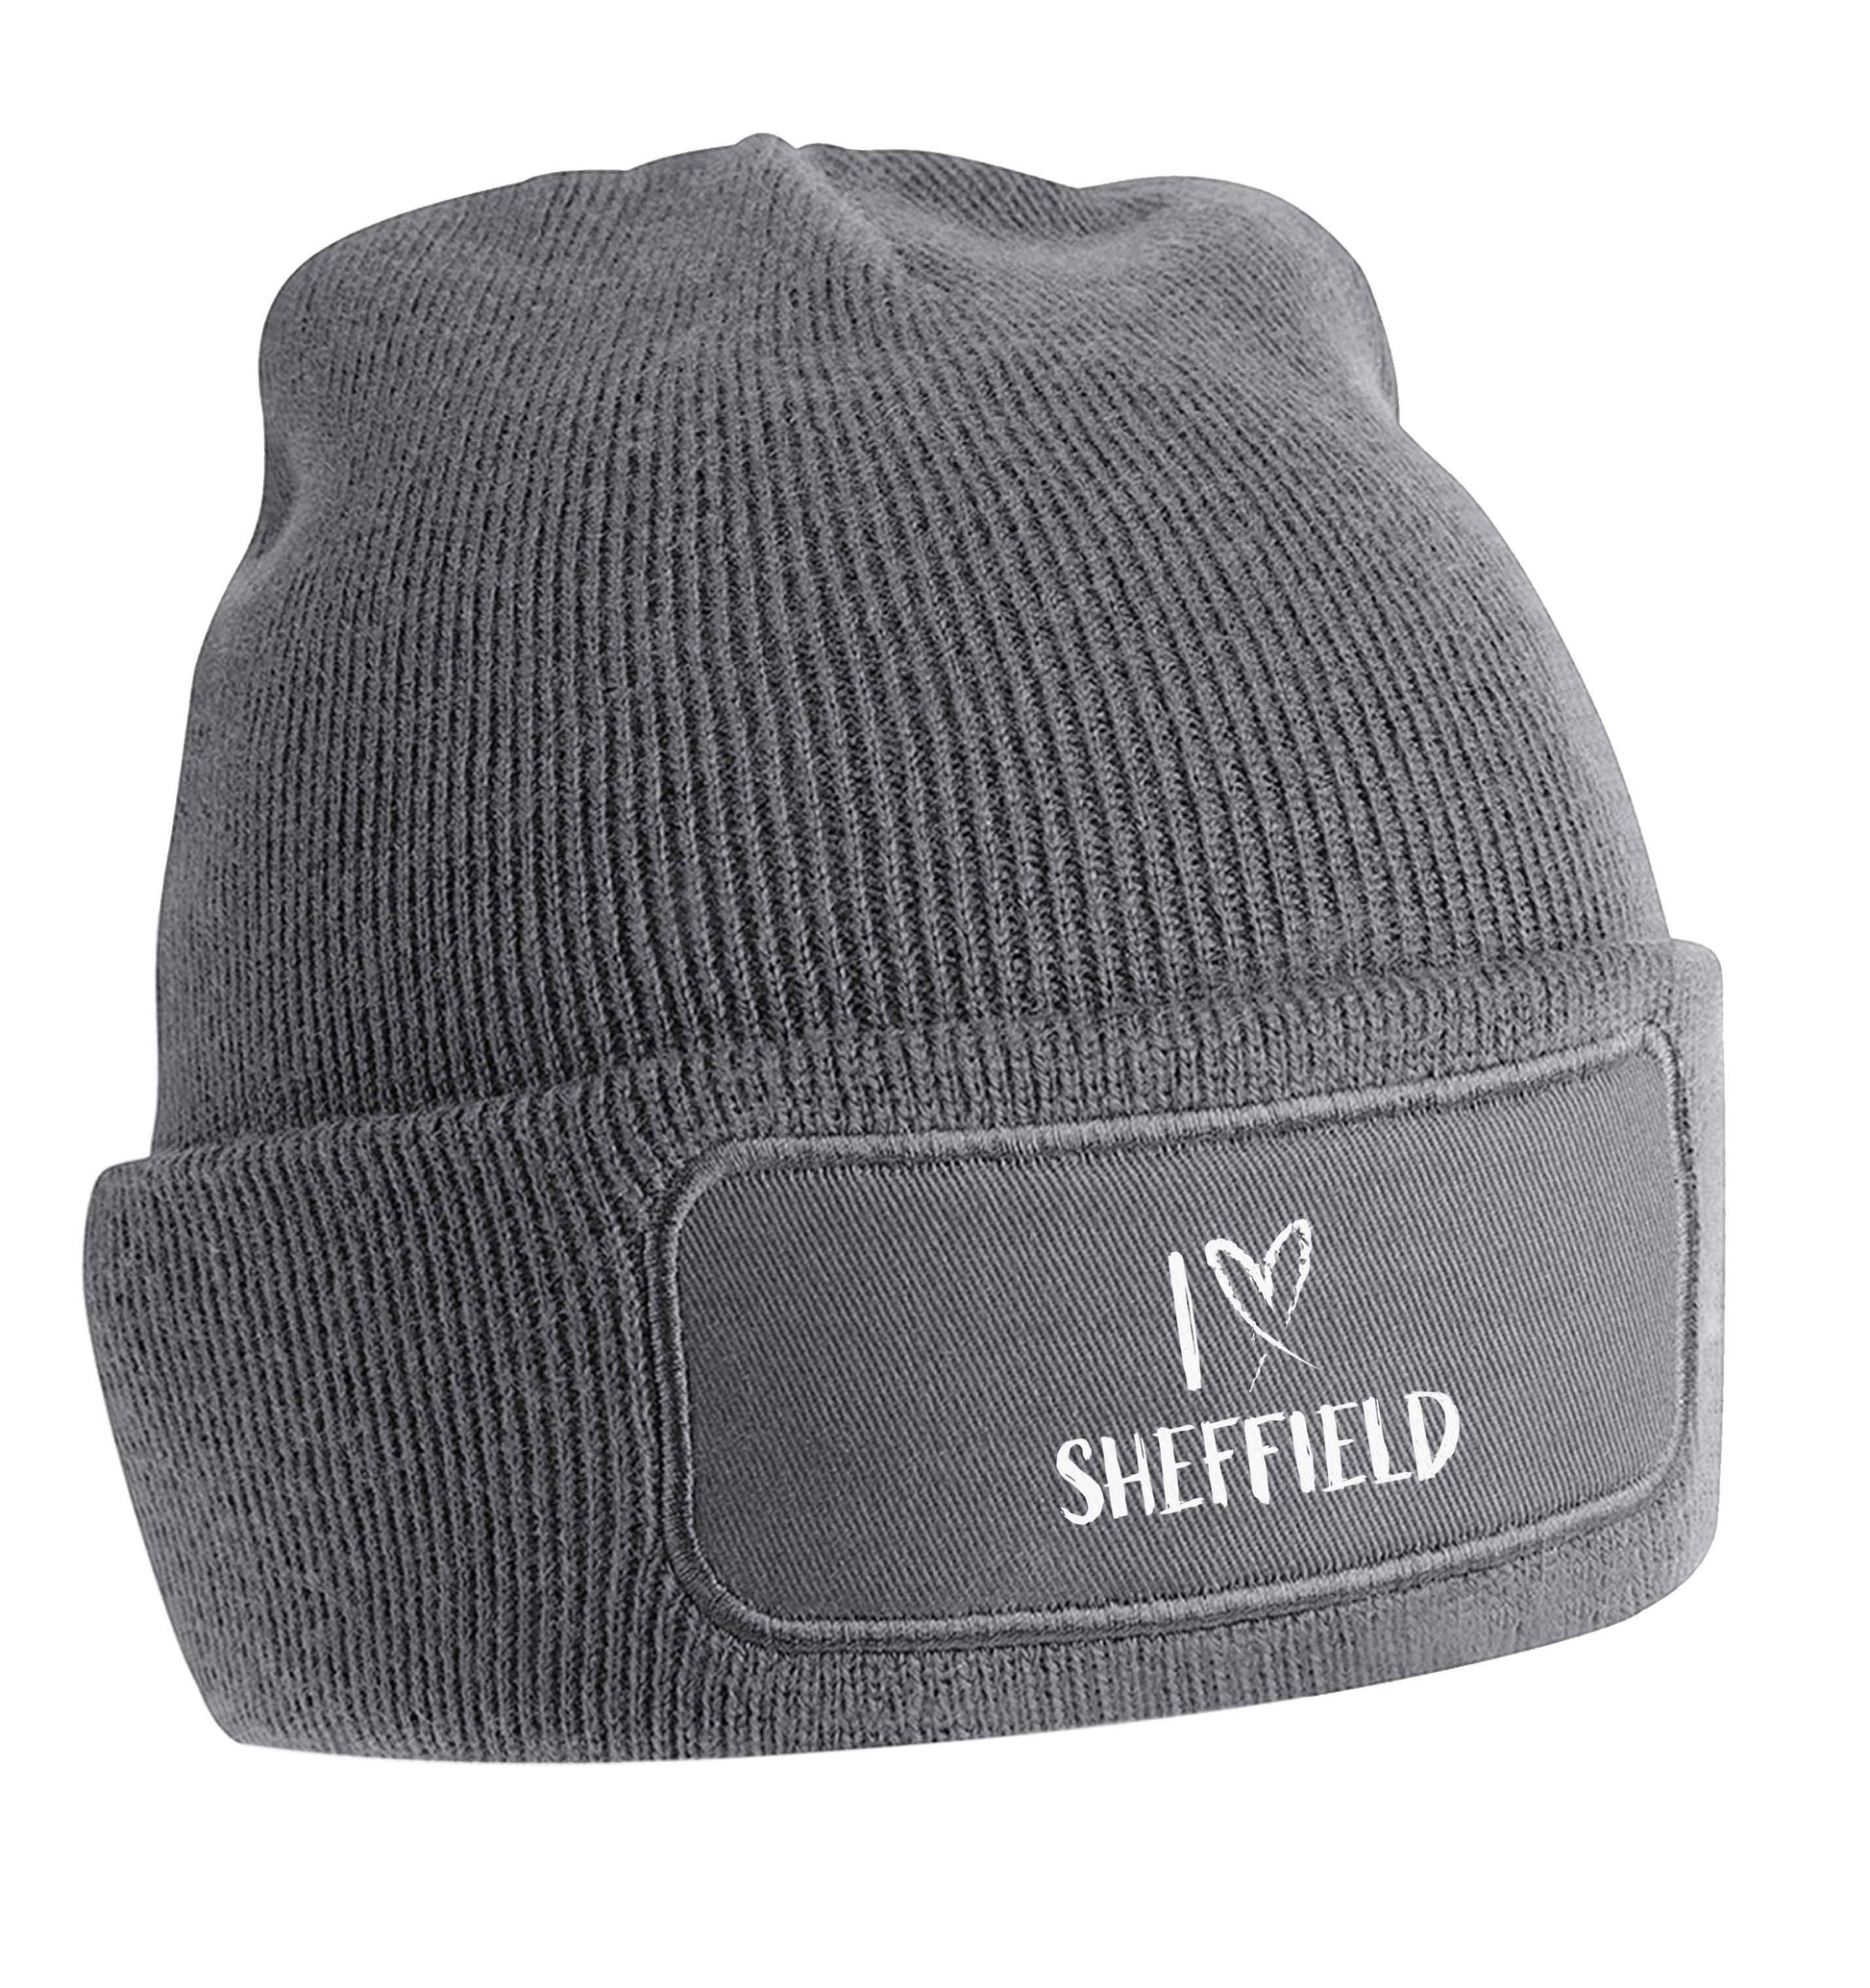 I love Sheffield beanie hat